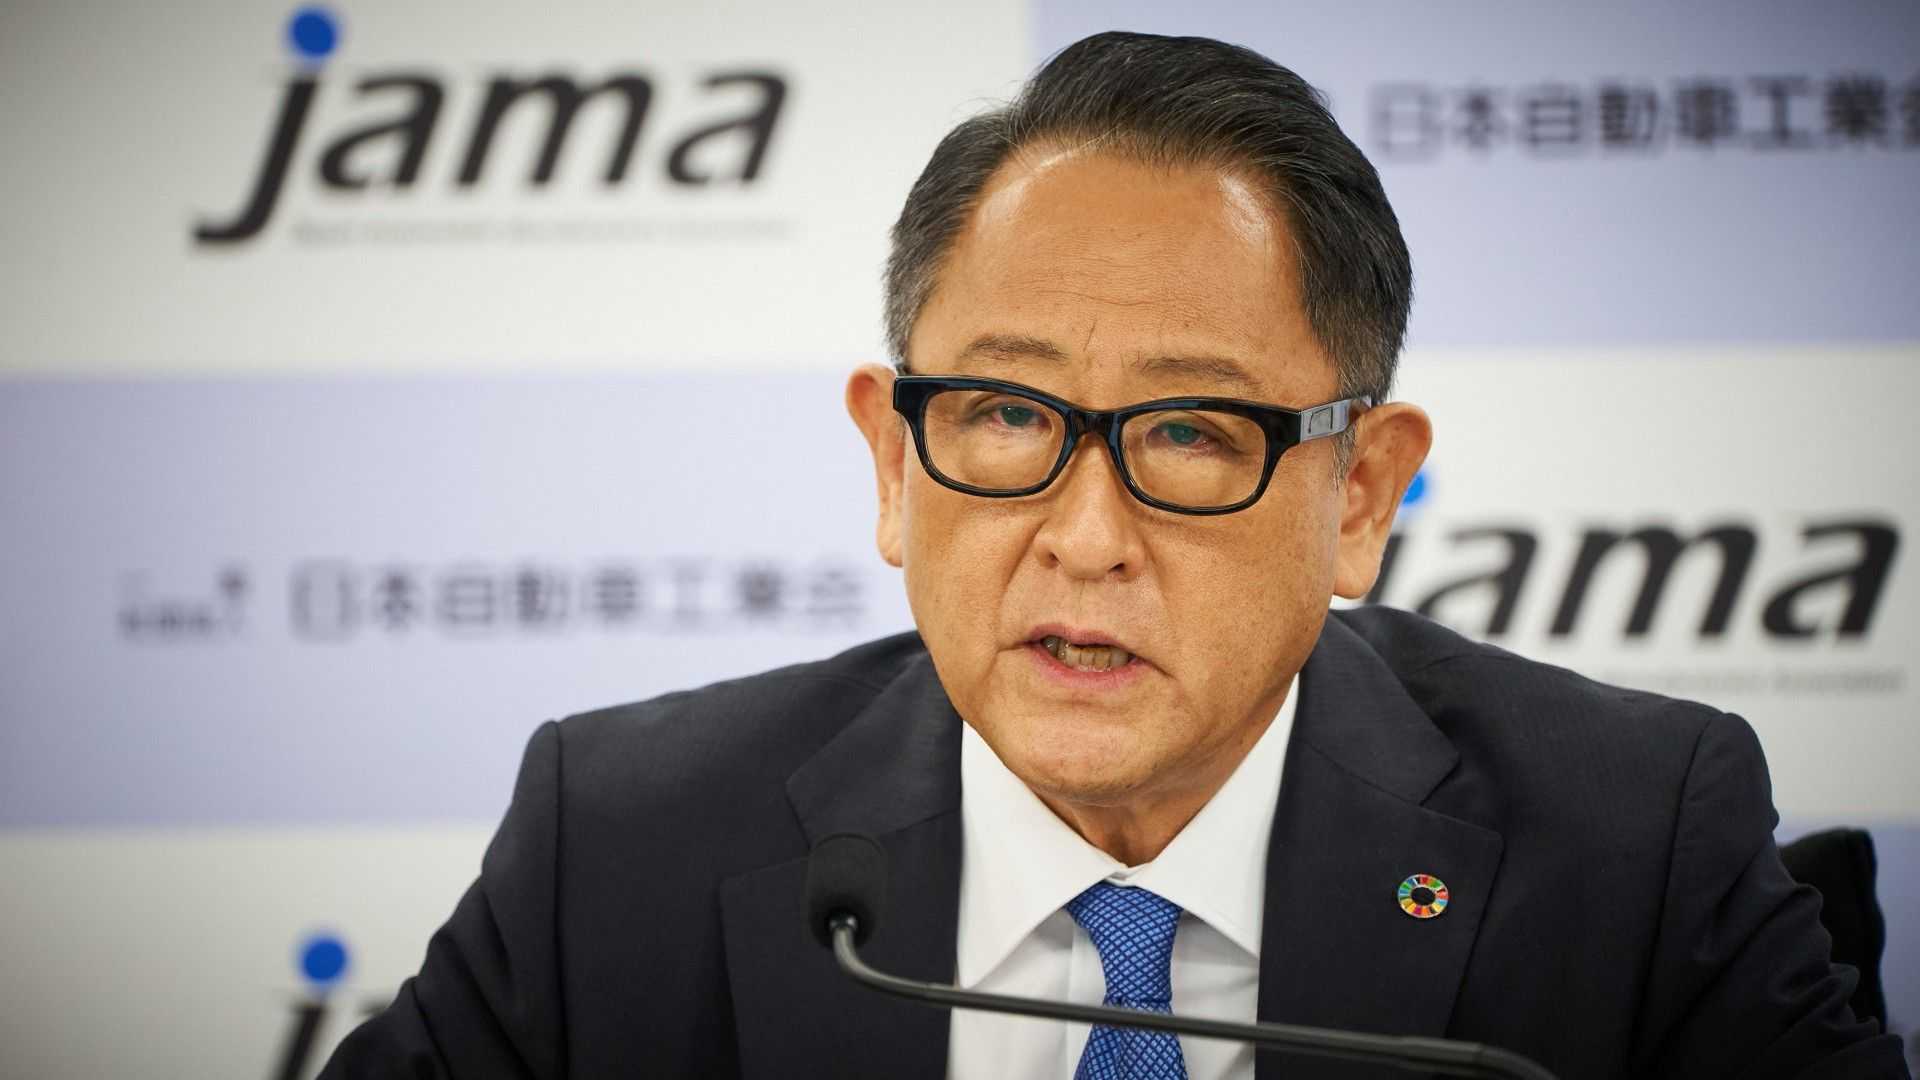 رئيس تويوتا يحذر من فقدان 5.5 مليون وظيفة في اليابان مع حظر البنزين والديزل 1